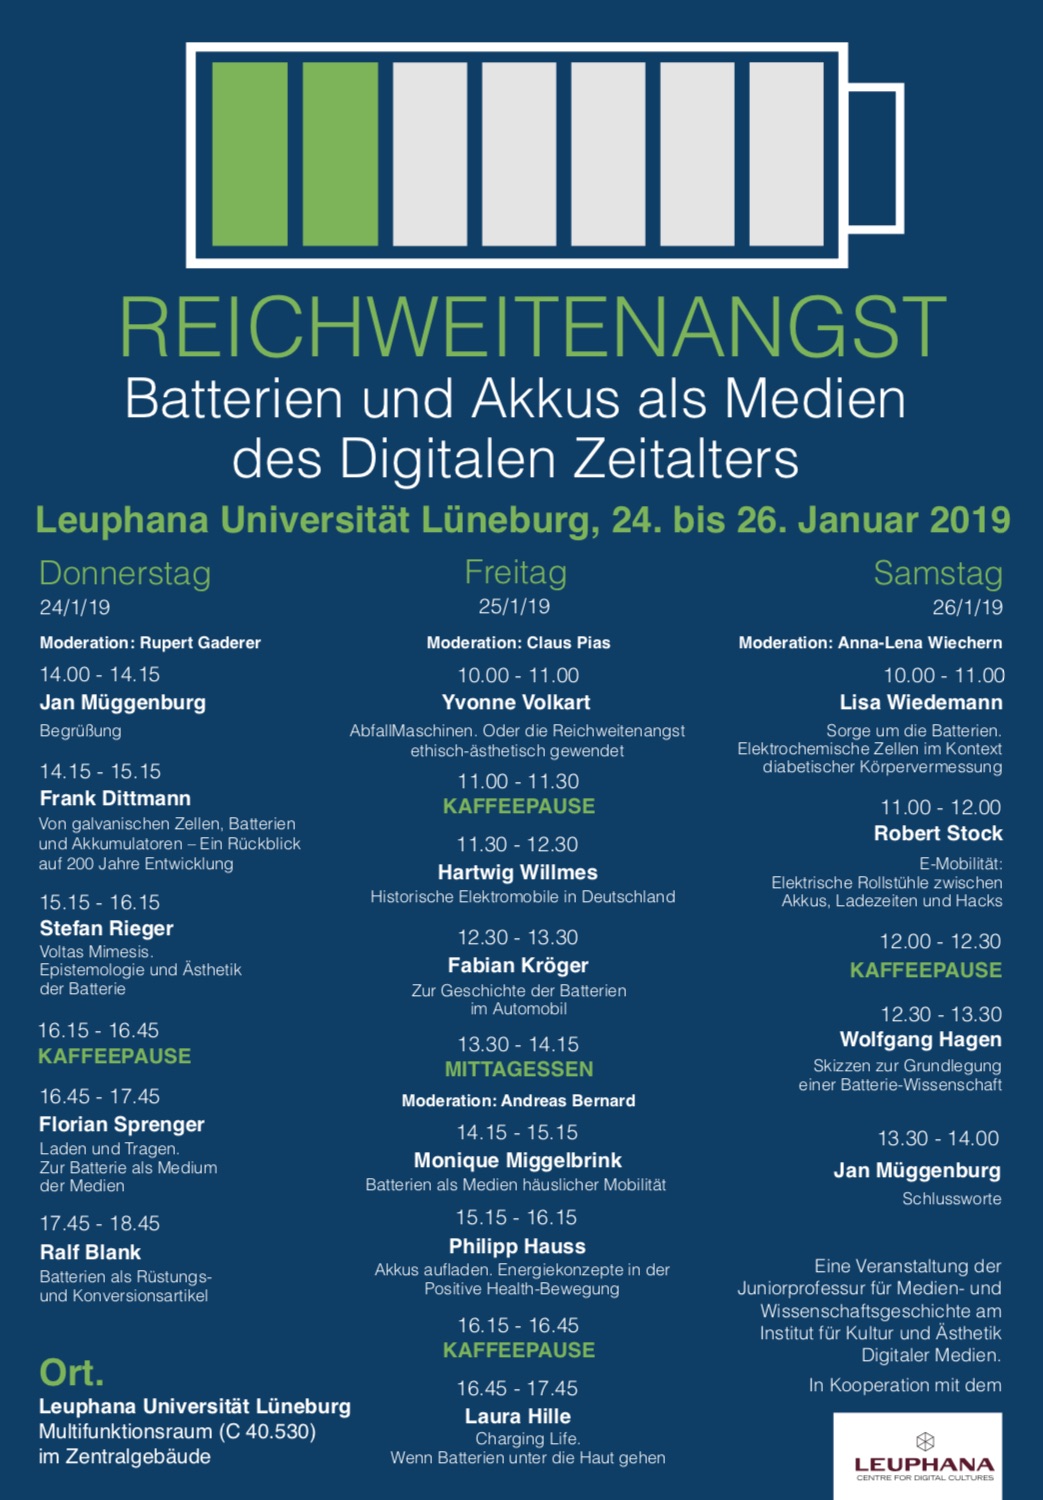 Konferenz Reichweitenangst Batterien und Akkus als Medien des Digitalen Zeitalters